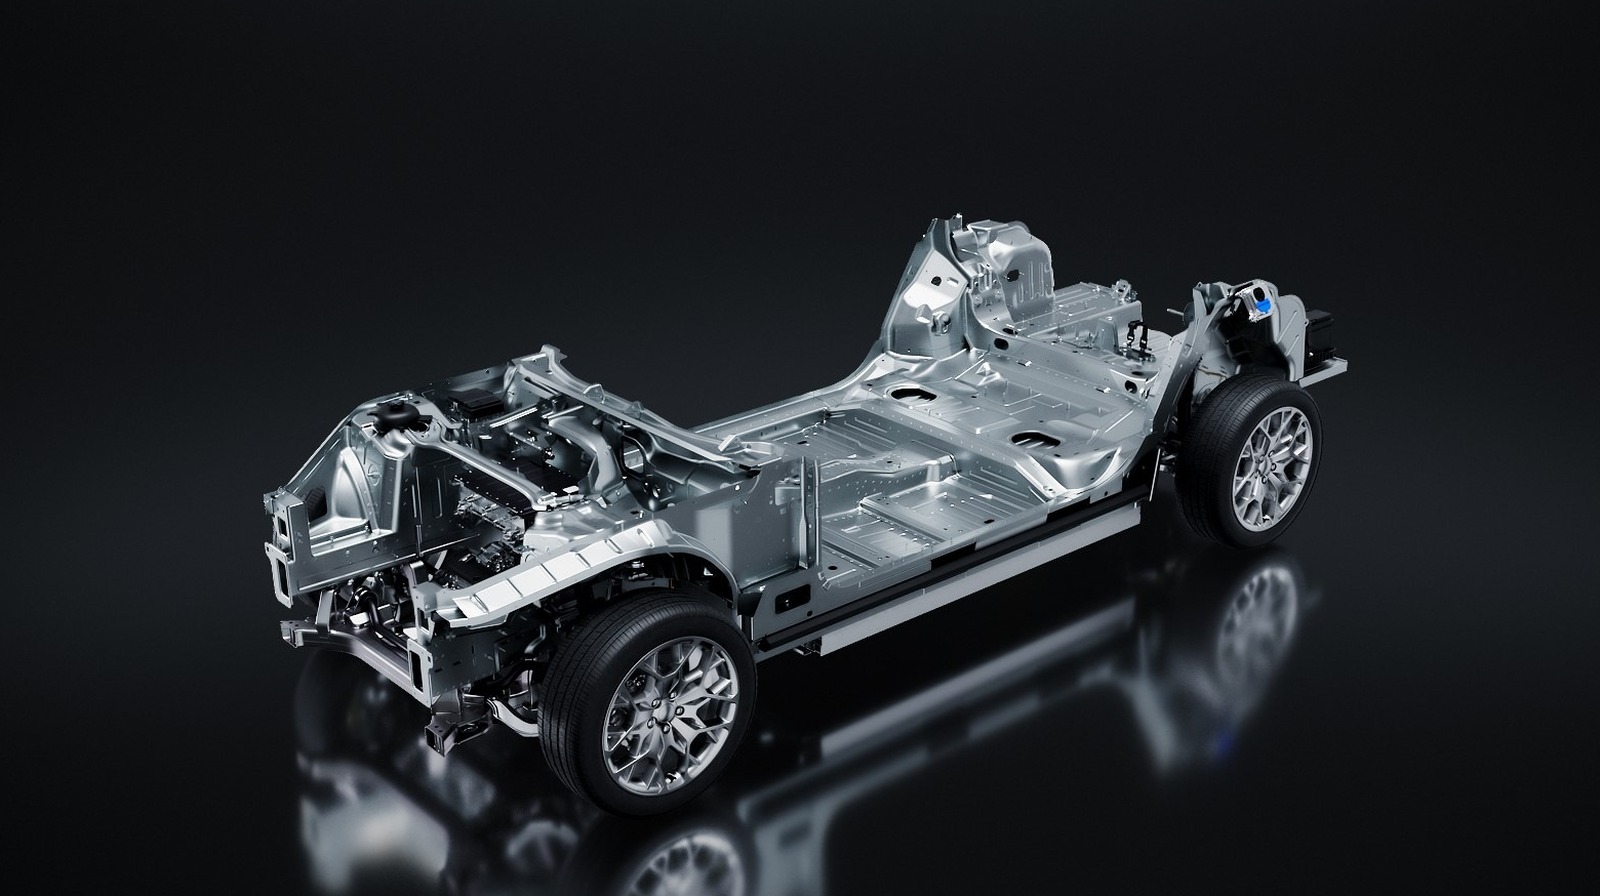 دوج و جیپ پلتفرم جدیدی را معرفی می‌کنند که قدرت هلکت را در قالب خودروهای الکتریکی به ارمغان می‌آورد